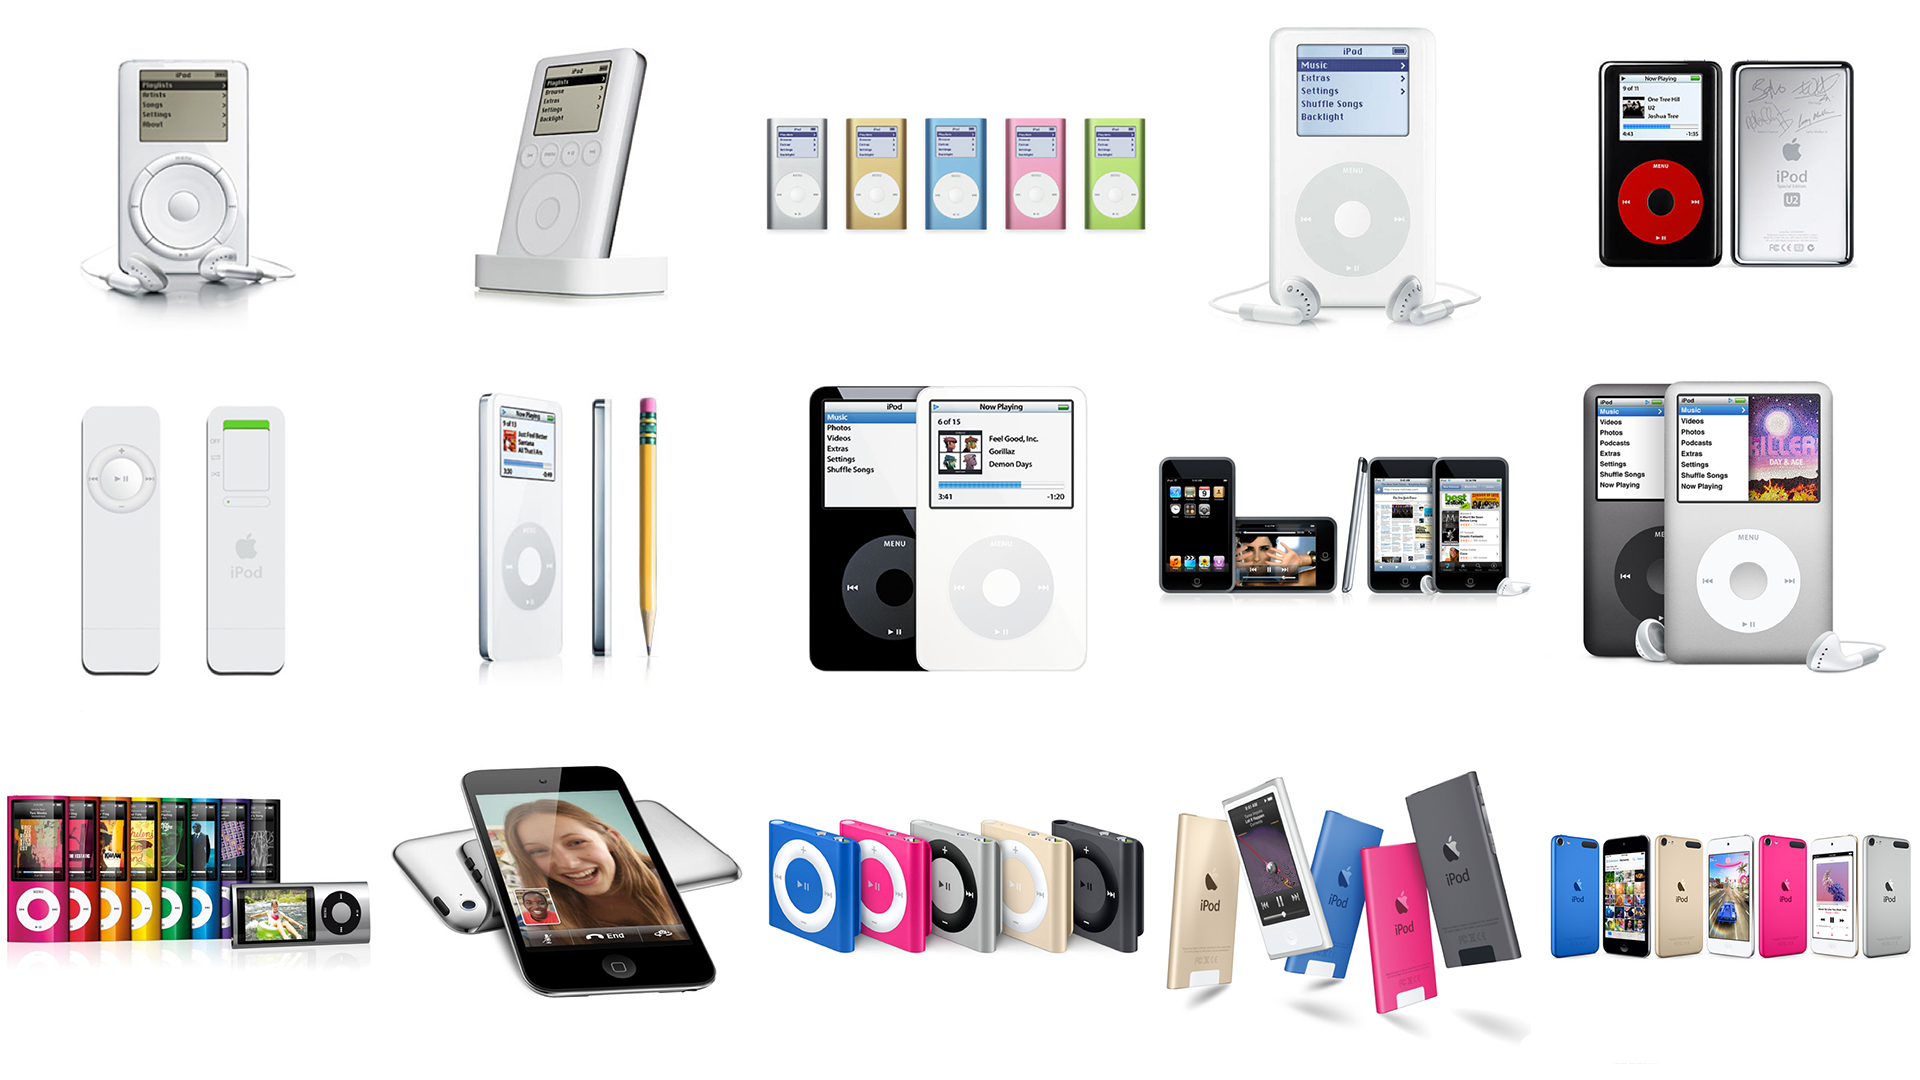 Varie versioni dell'Ipod nel corso degli anni